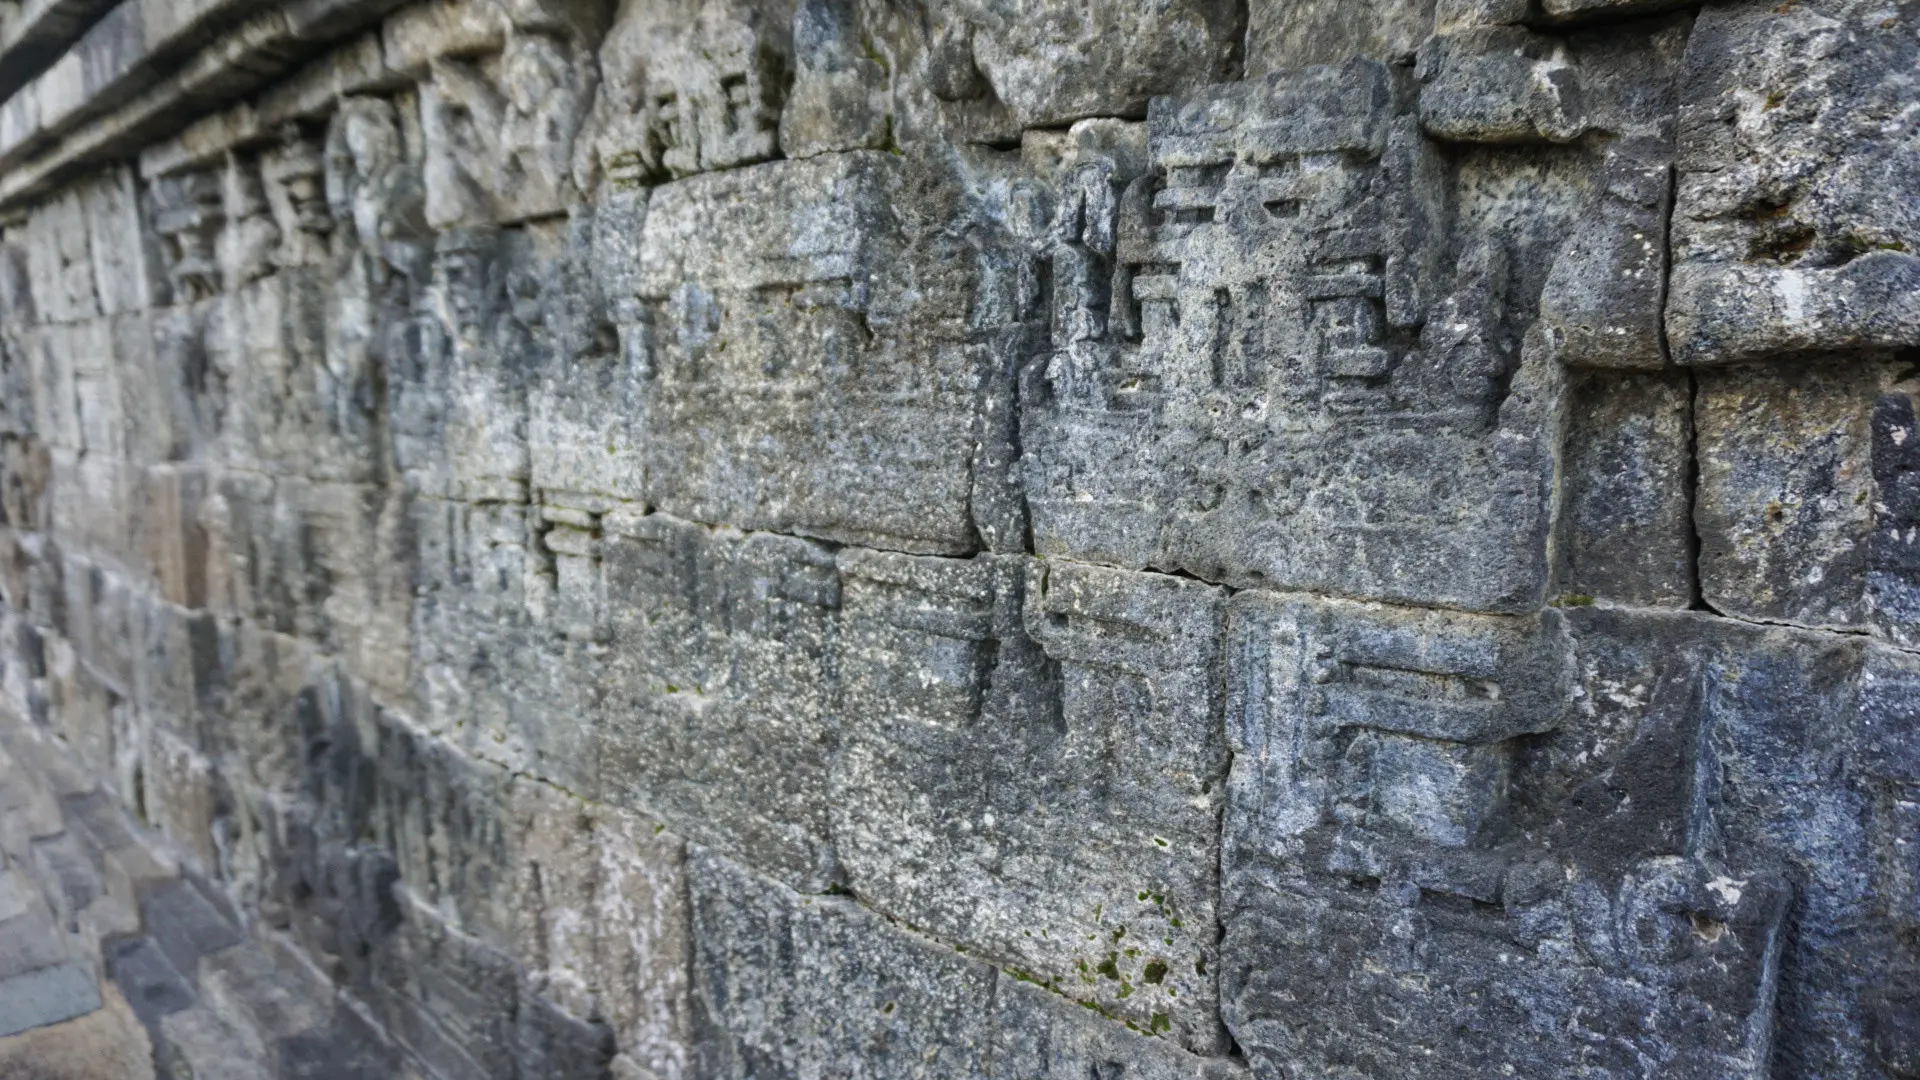 Struktur bangunan Candi Borobudur dibuat dengan 2 juta potong batu yang disusun di atas bukit. (Liputan6.com/Fajar Abrori)